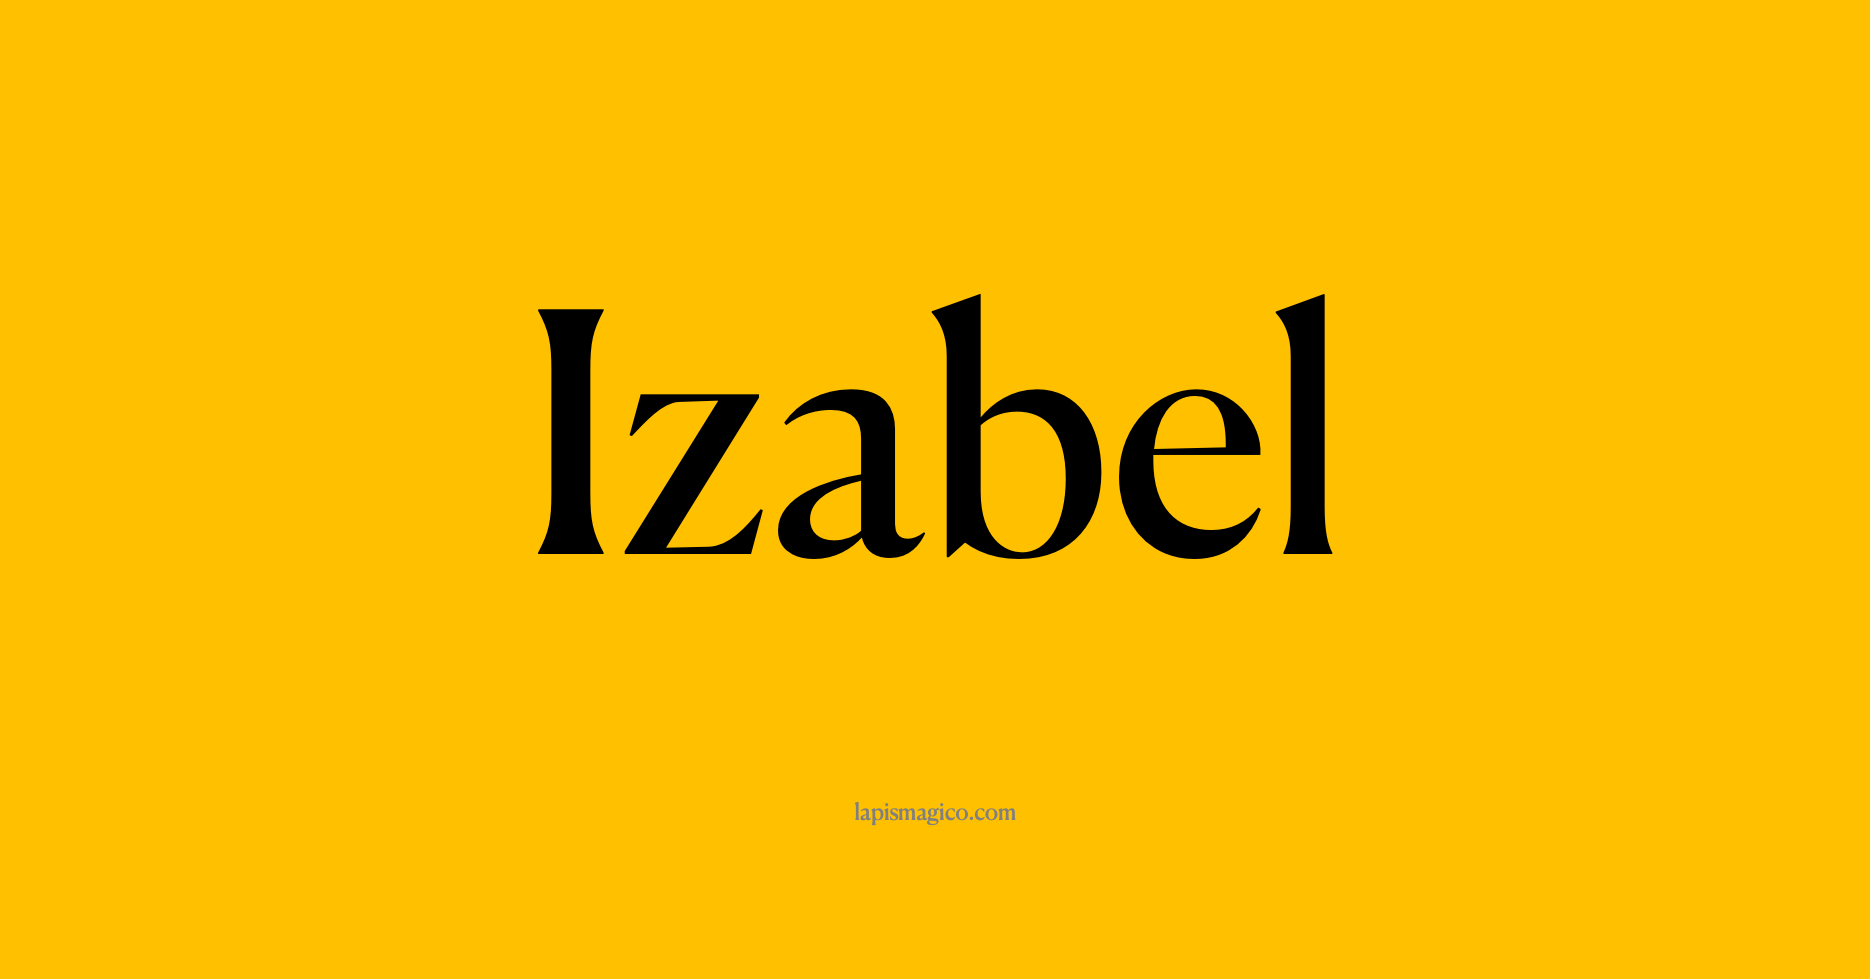 Nome Izabel